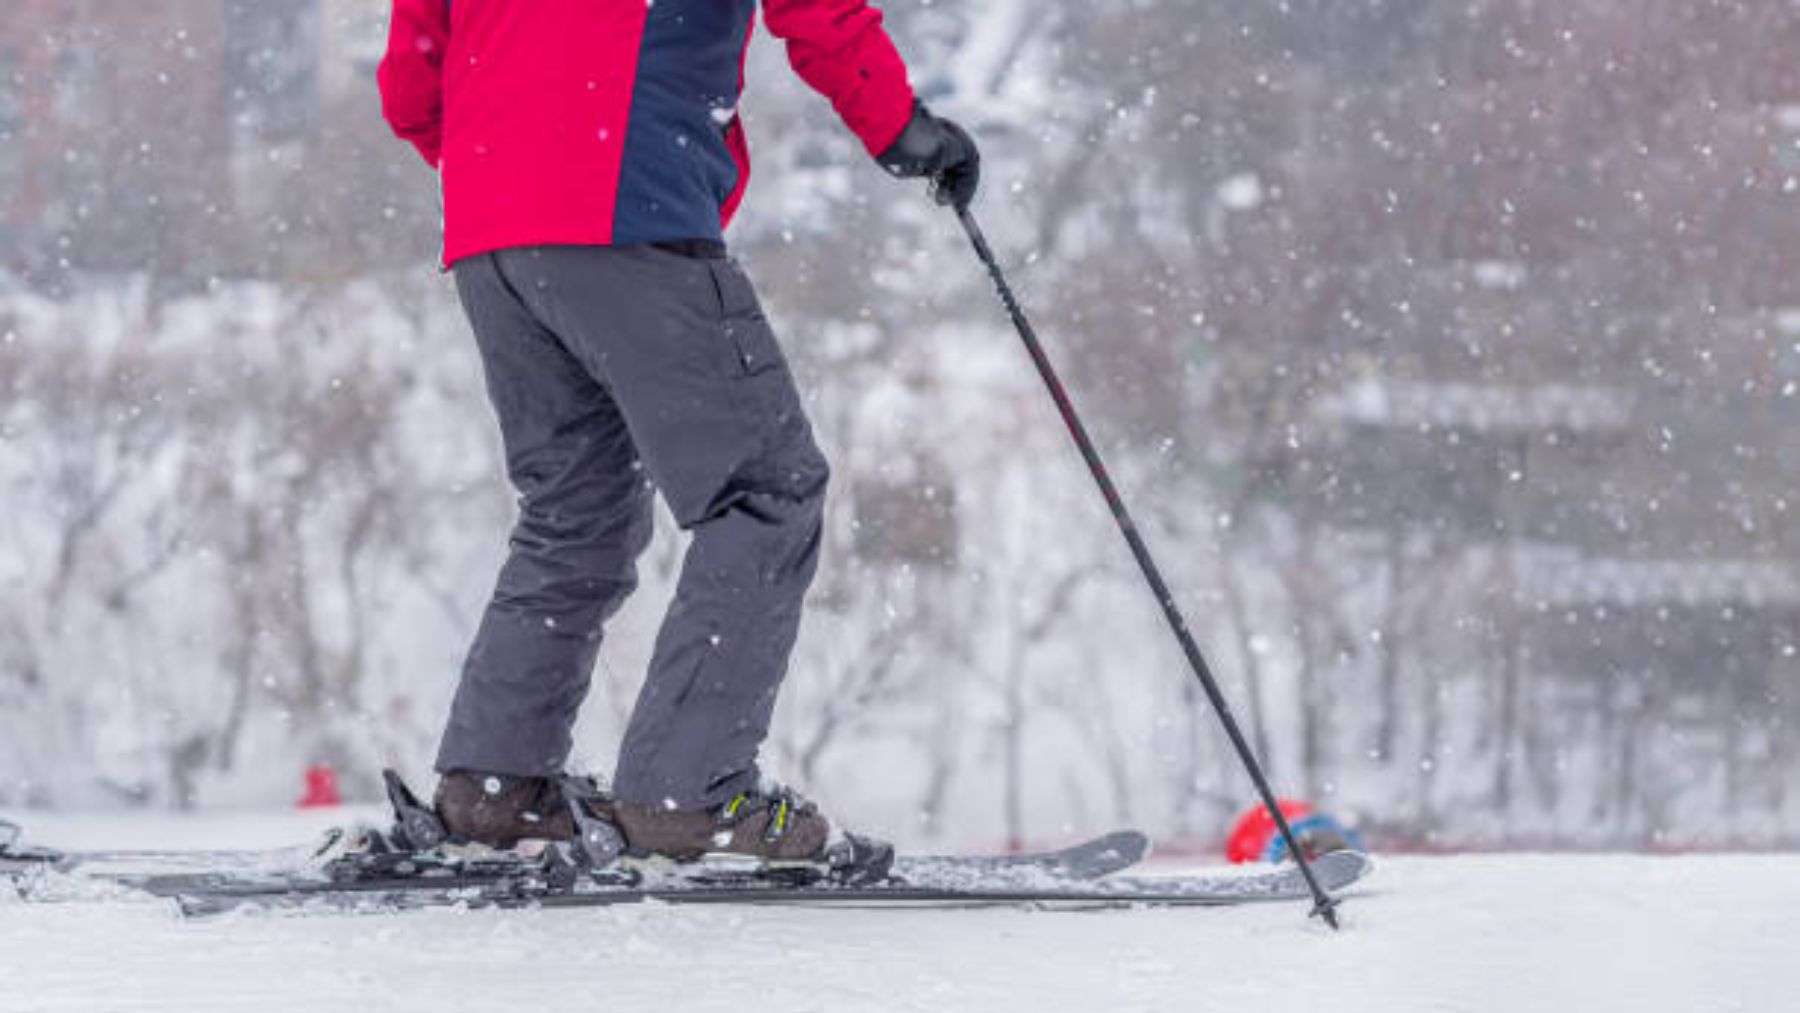 Pantalón de esquí y nieve Niños impermeable Wedze Ski-P 100